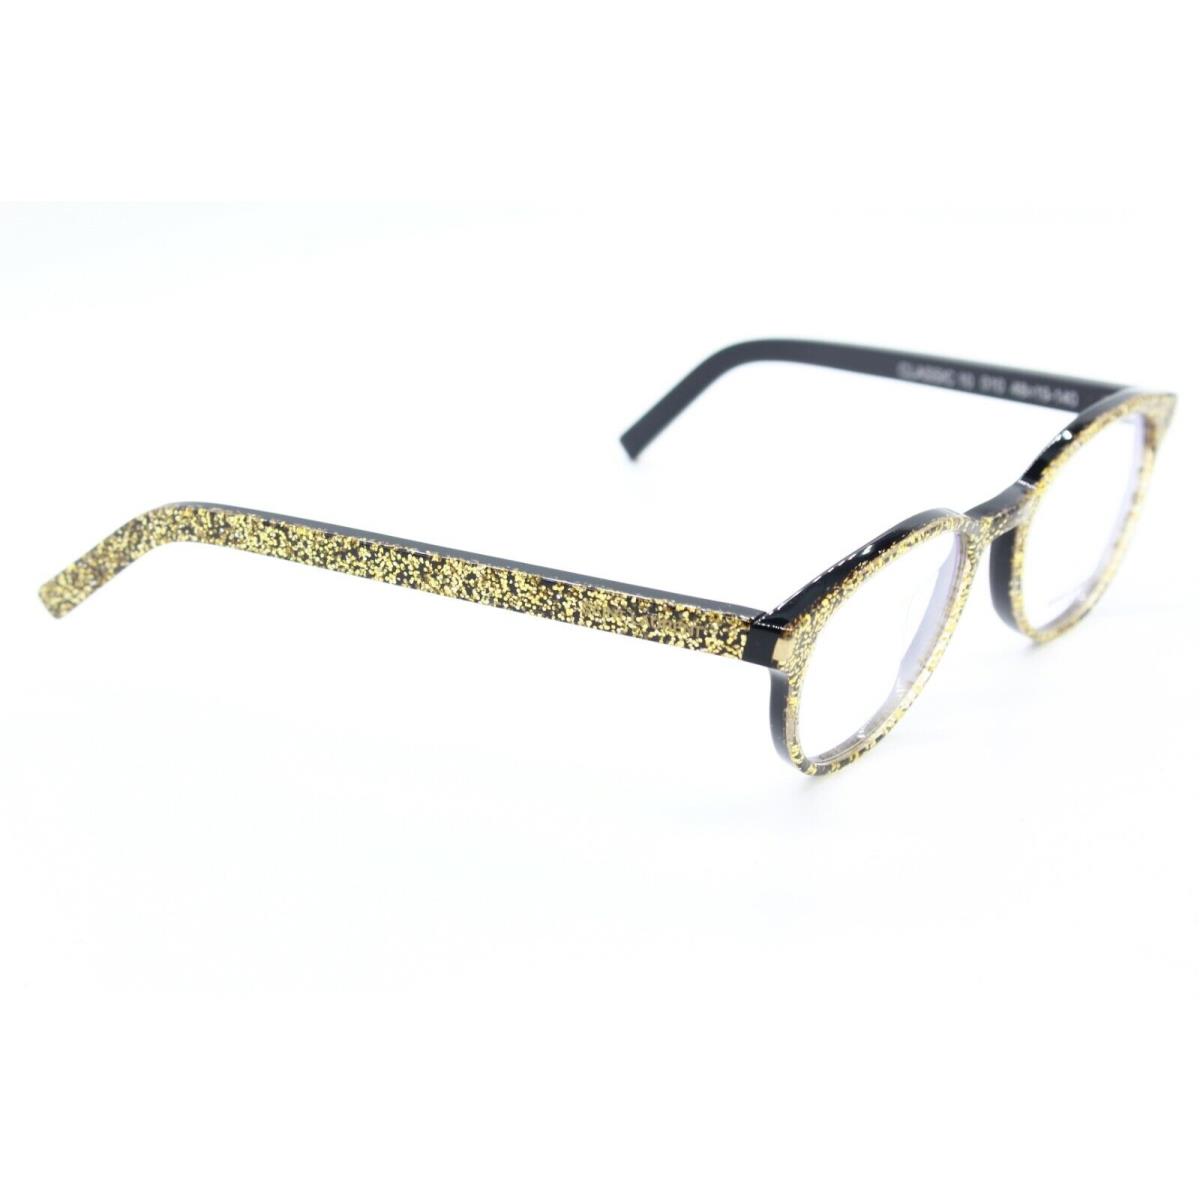 Yves Saint Laurent eyeglasses CLASSIC - BLACK GOLD Frame 1